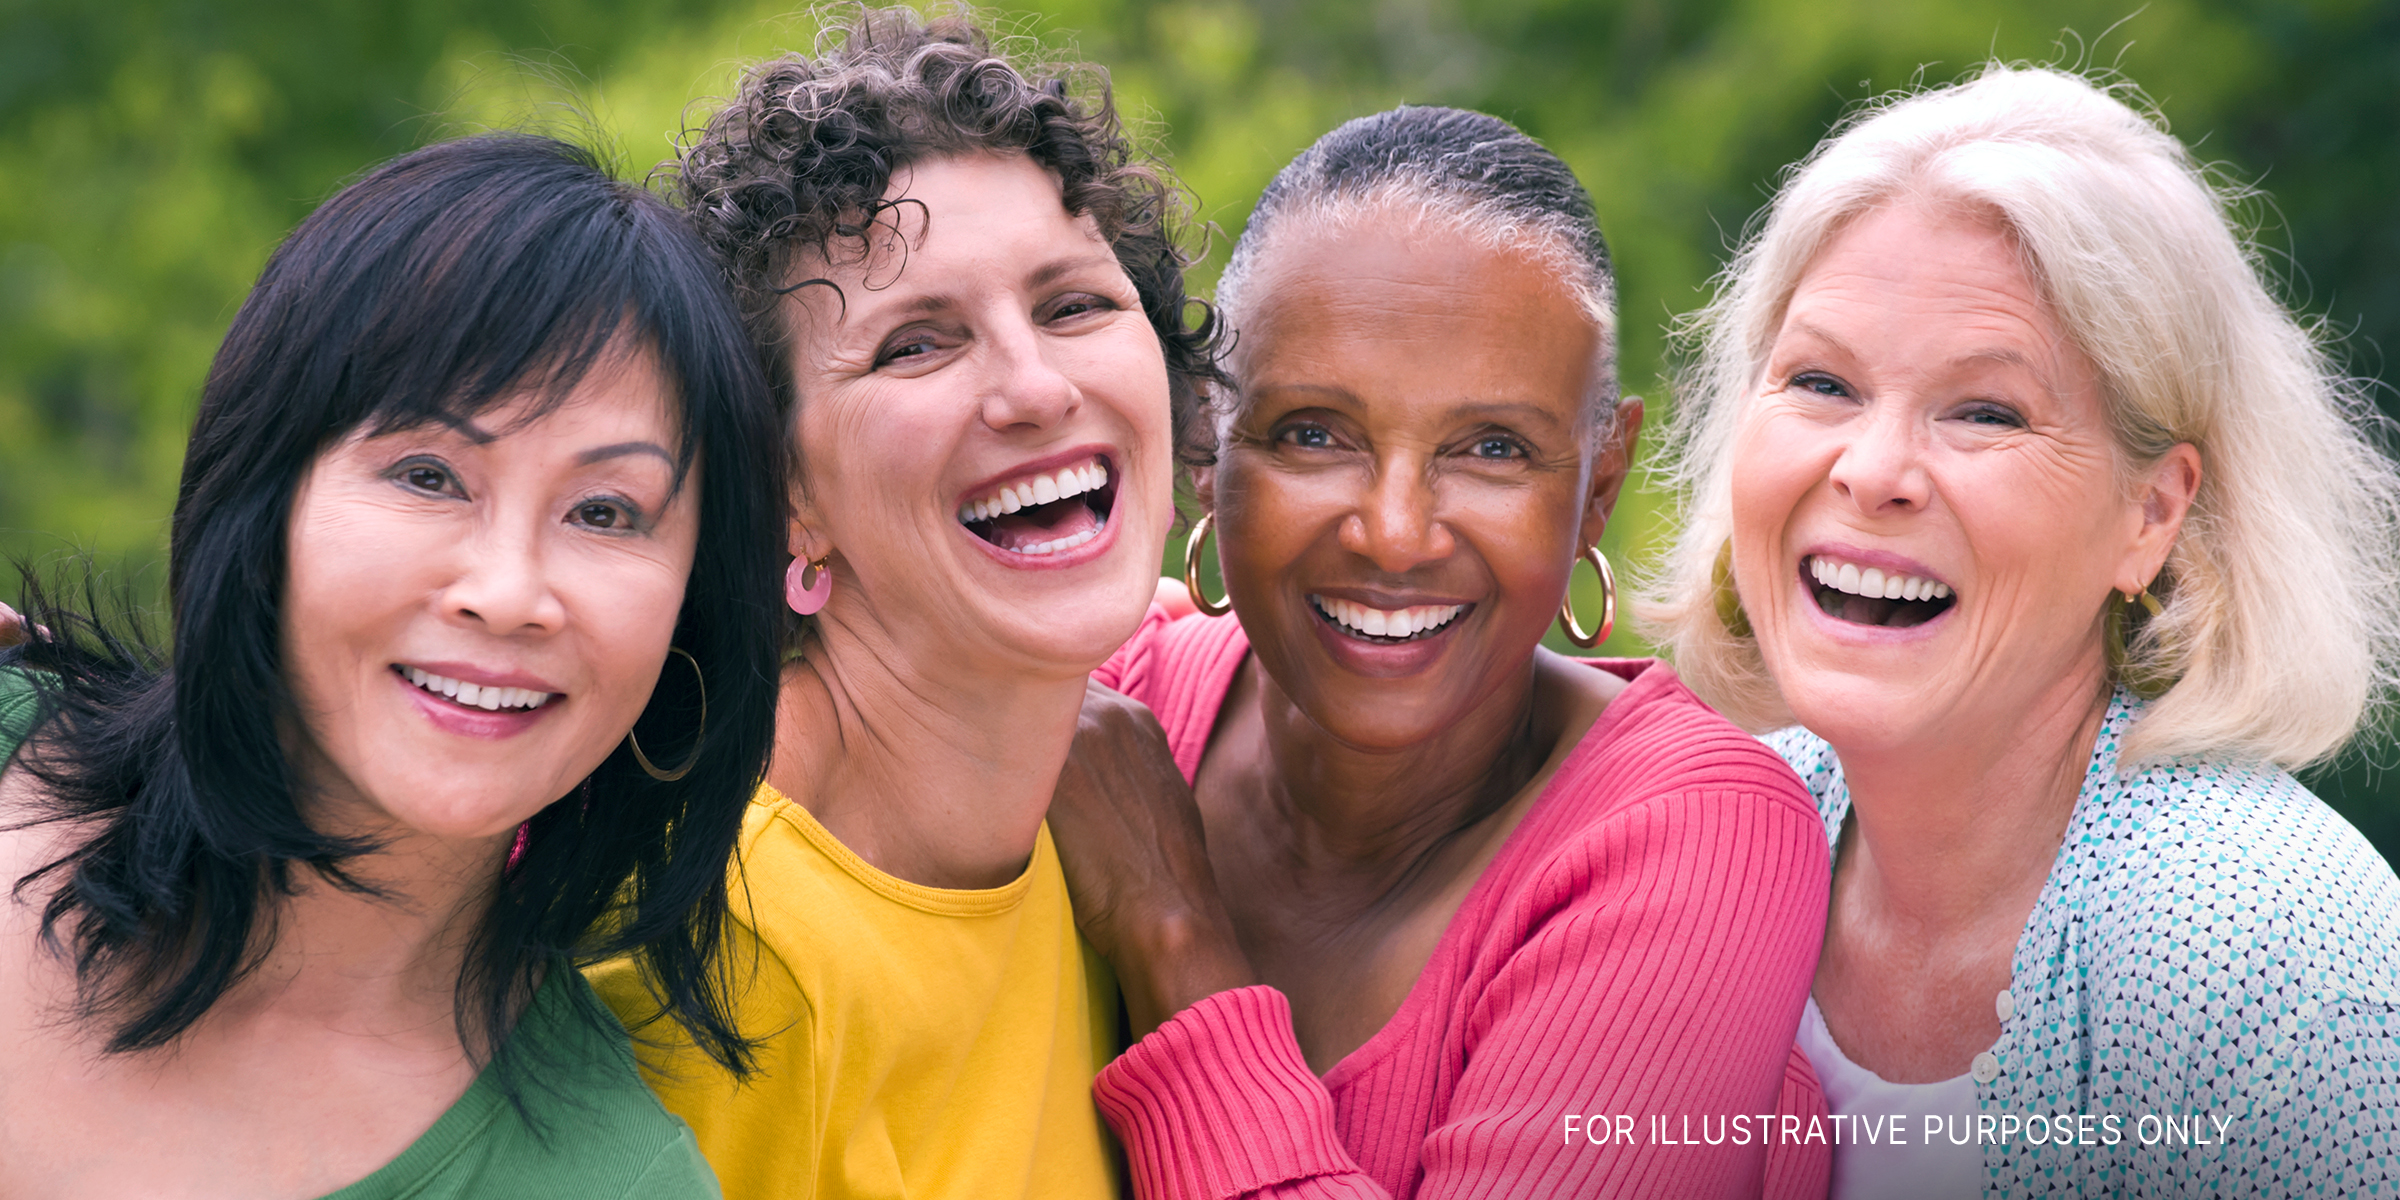 Eine Gruppe von glücklichen Frauen | Quelle: Getty Images